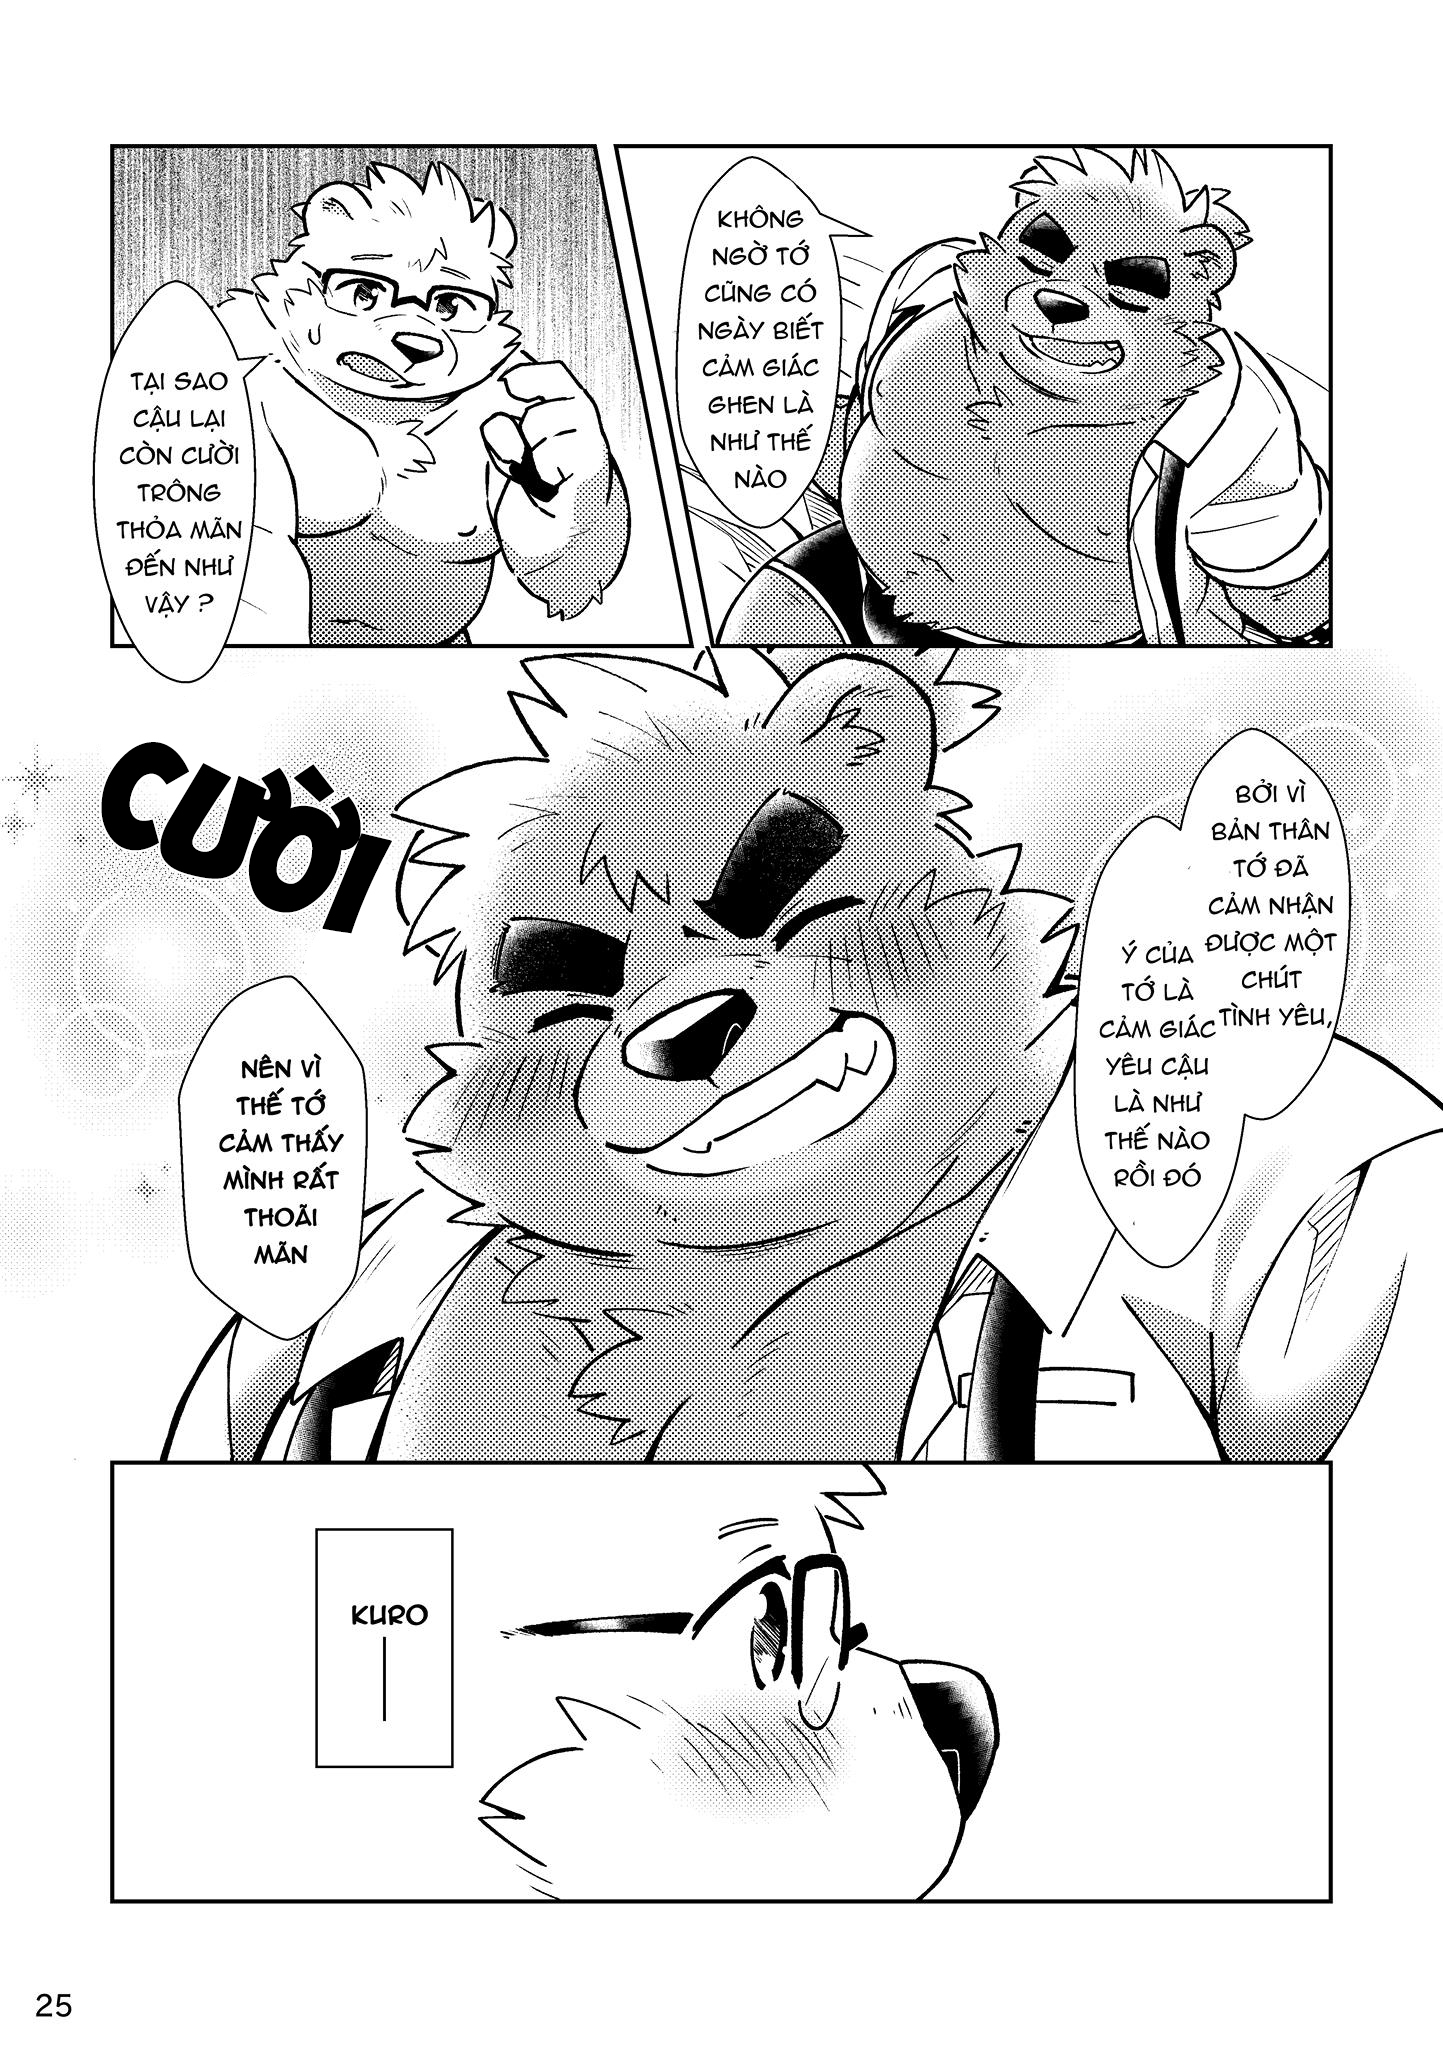 [Hinami] Shiro và Kuro  2 [VN] - Trang 26